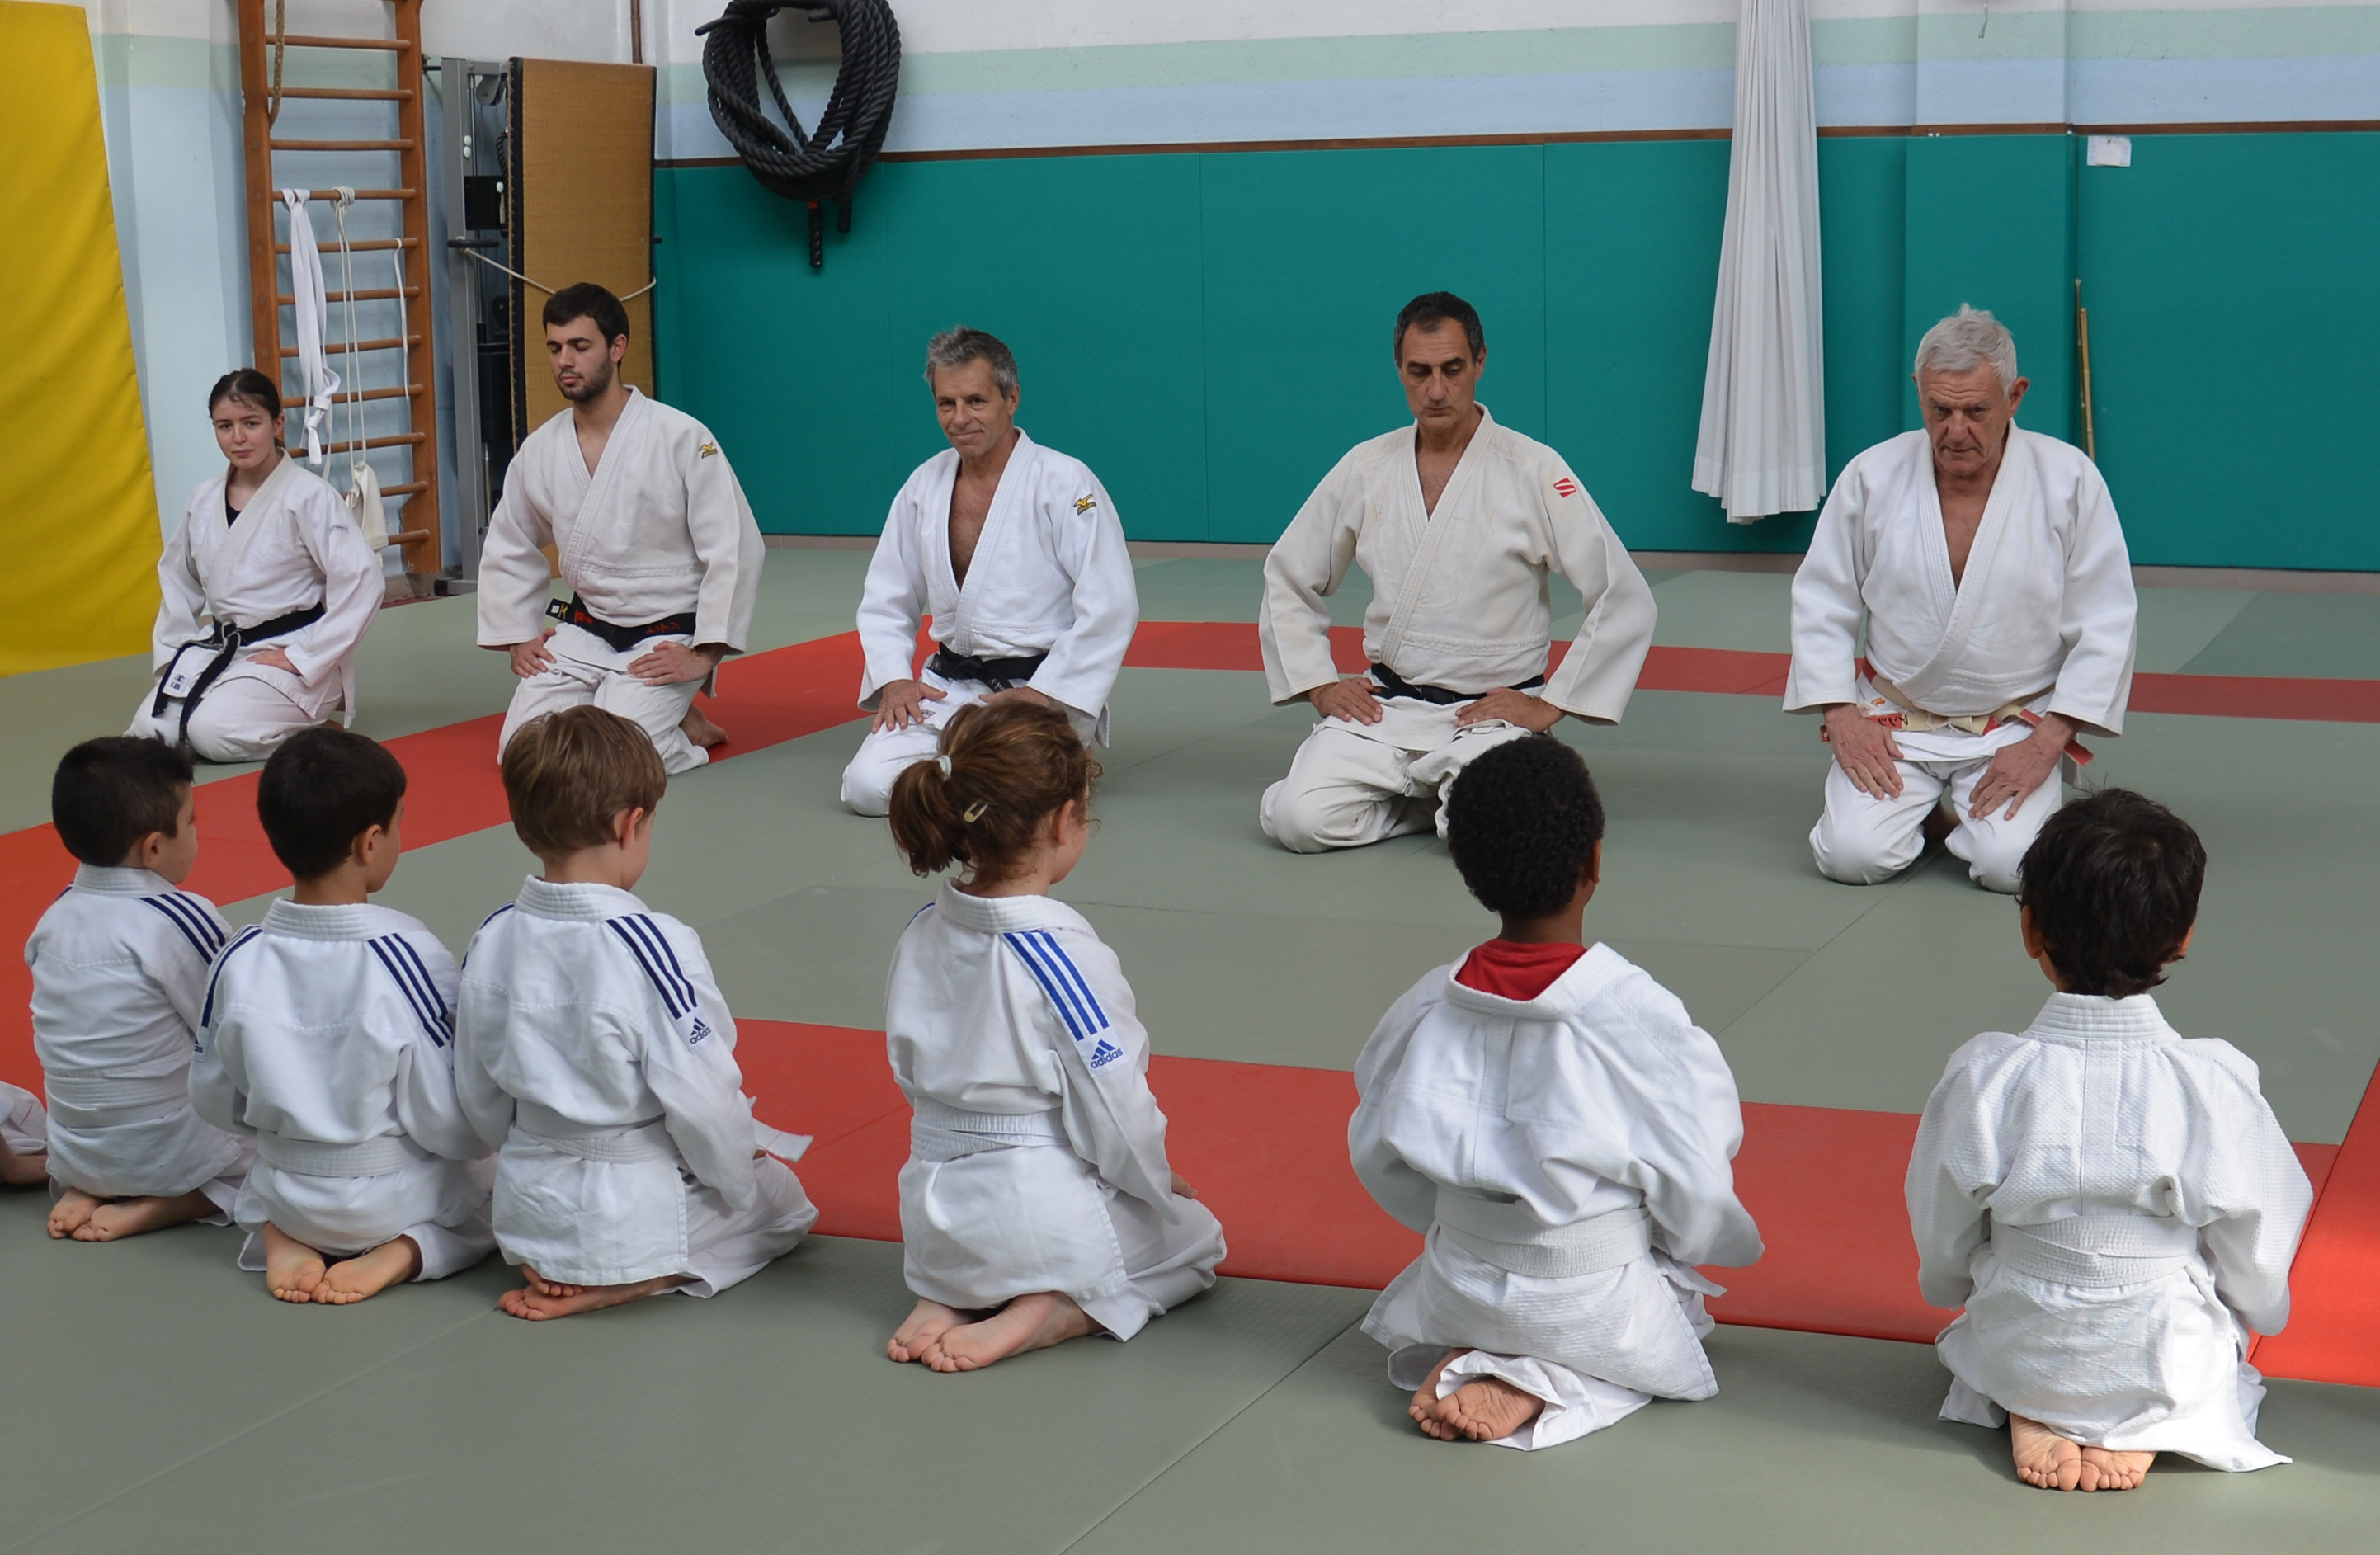 Il Judo è una disciplina per tutti, i cui effetti si estendono ben oltre la pratica nel dojo. Vieni a trovarci per scoprire un metodo adatto a praticanti di ogni età.